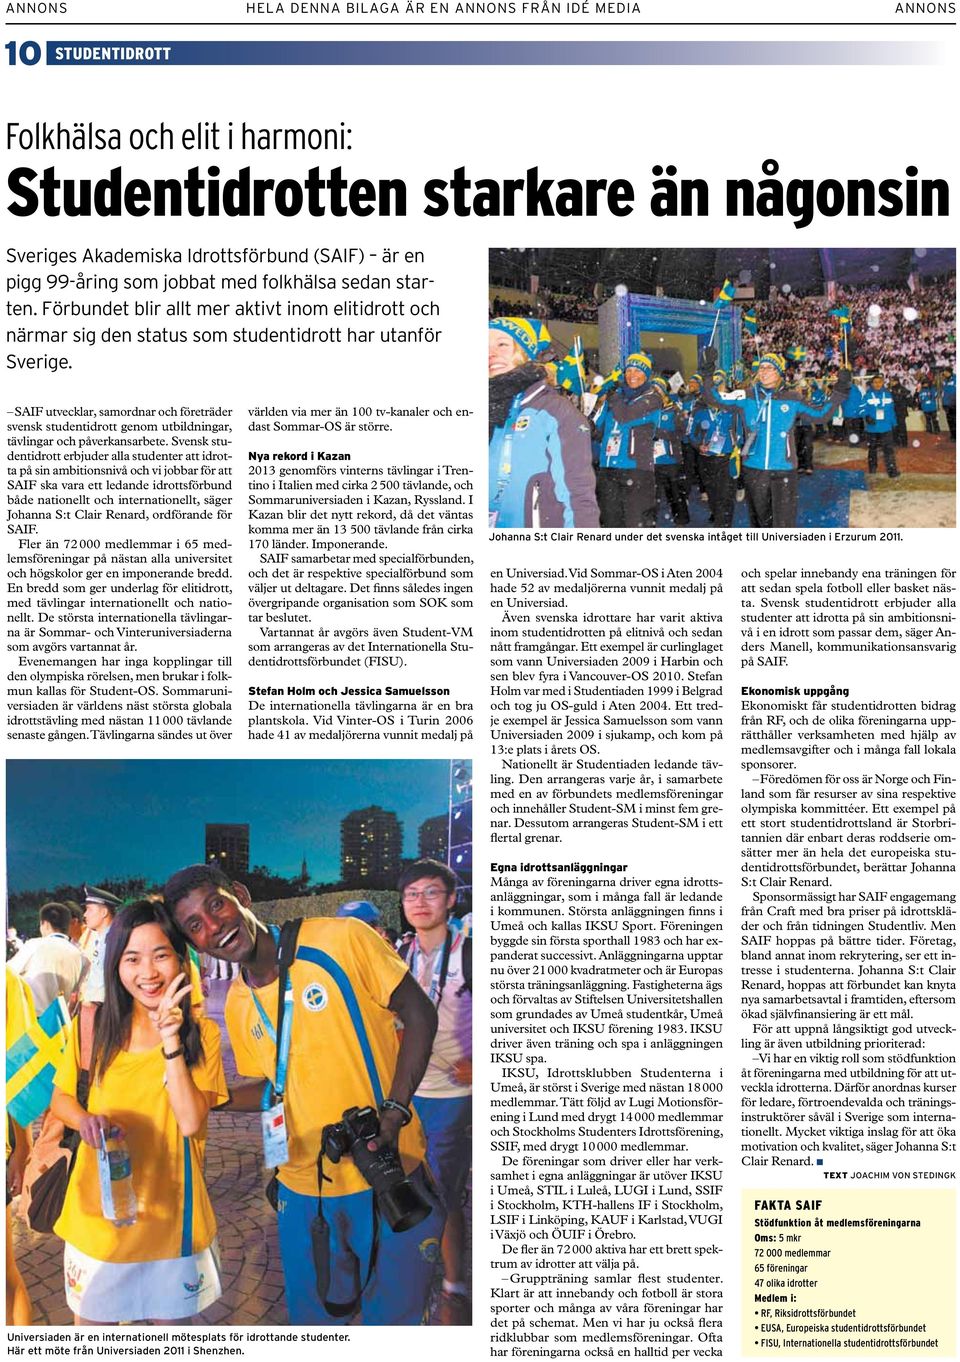 SAIF utvecklar, samordnar och företräder svensk studentidrott genom utbildningar, tävlingar och påverkansarbete.